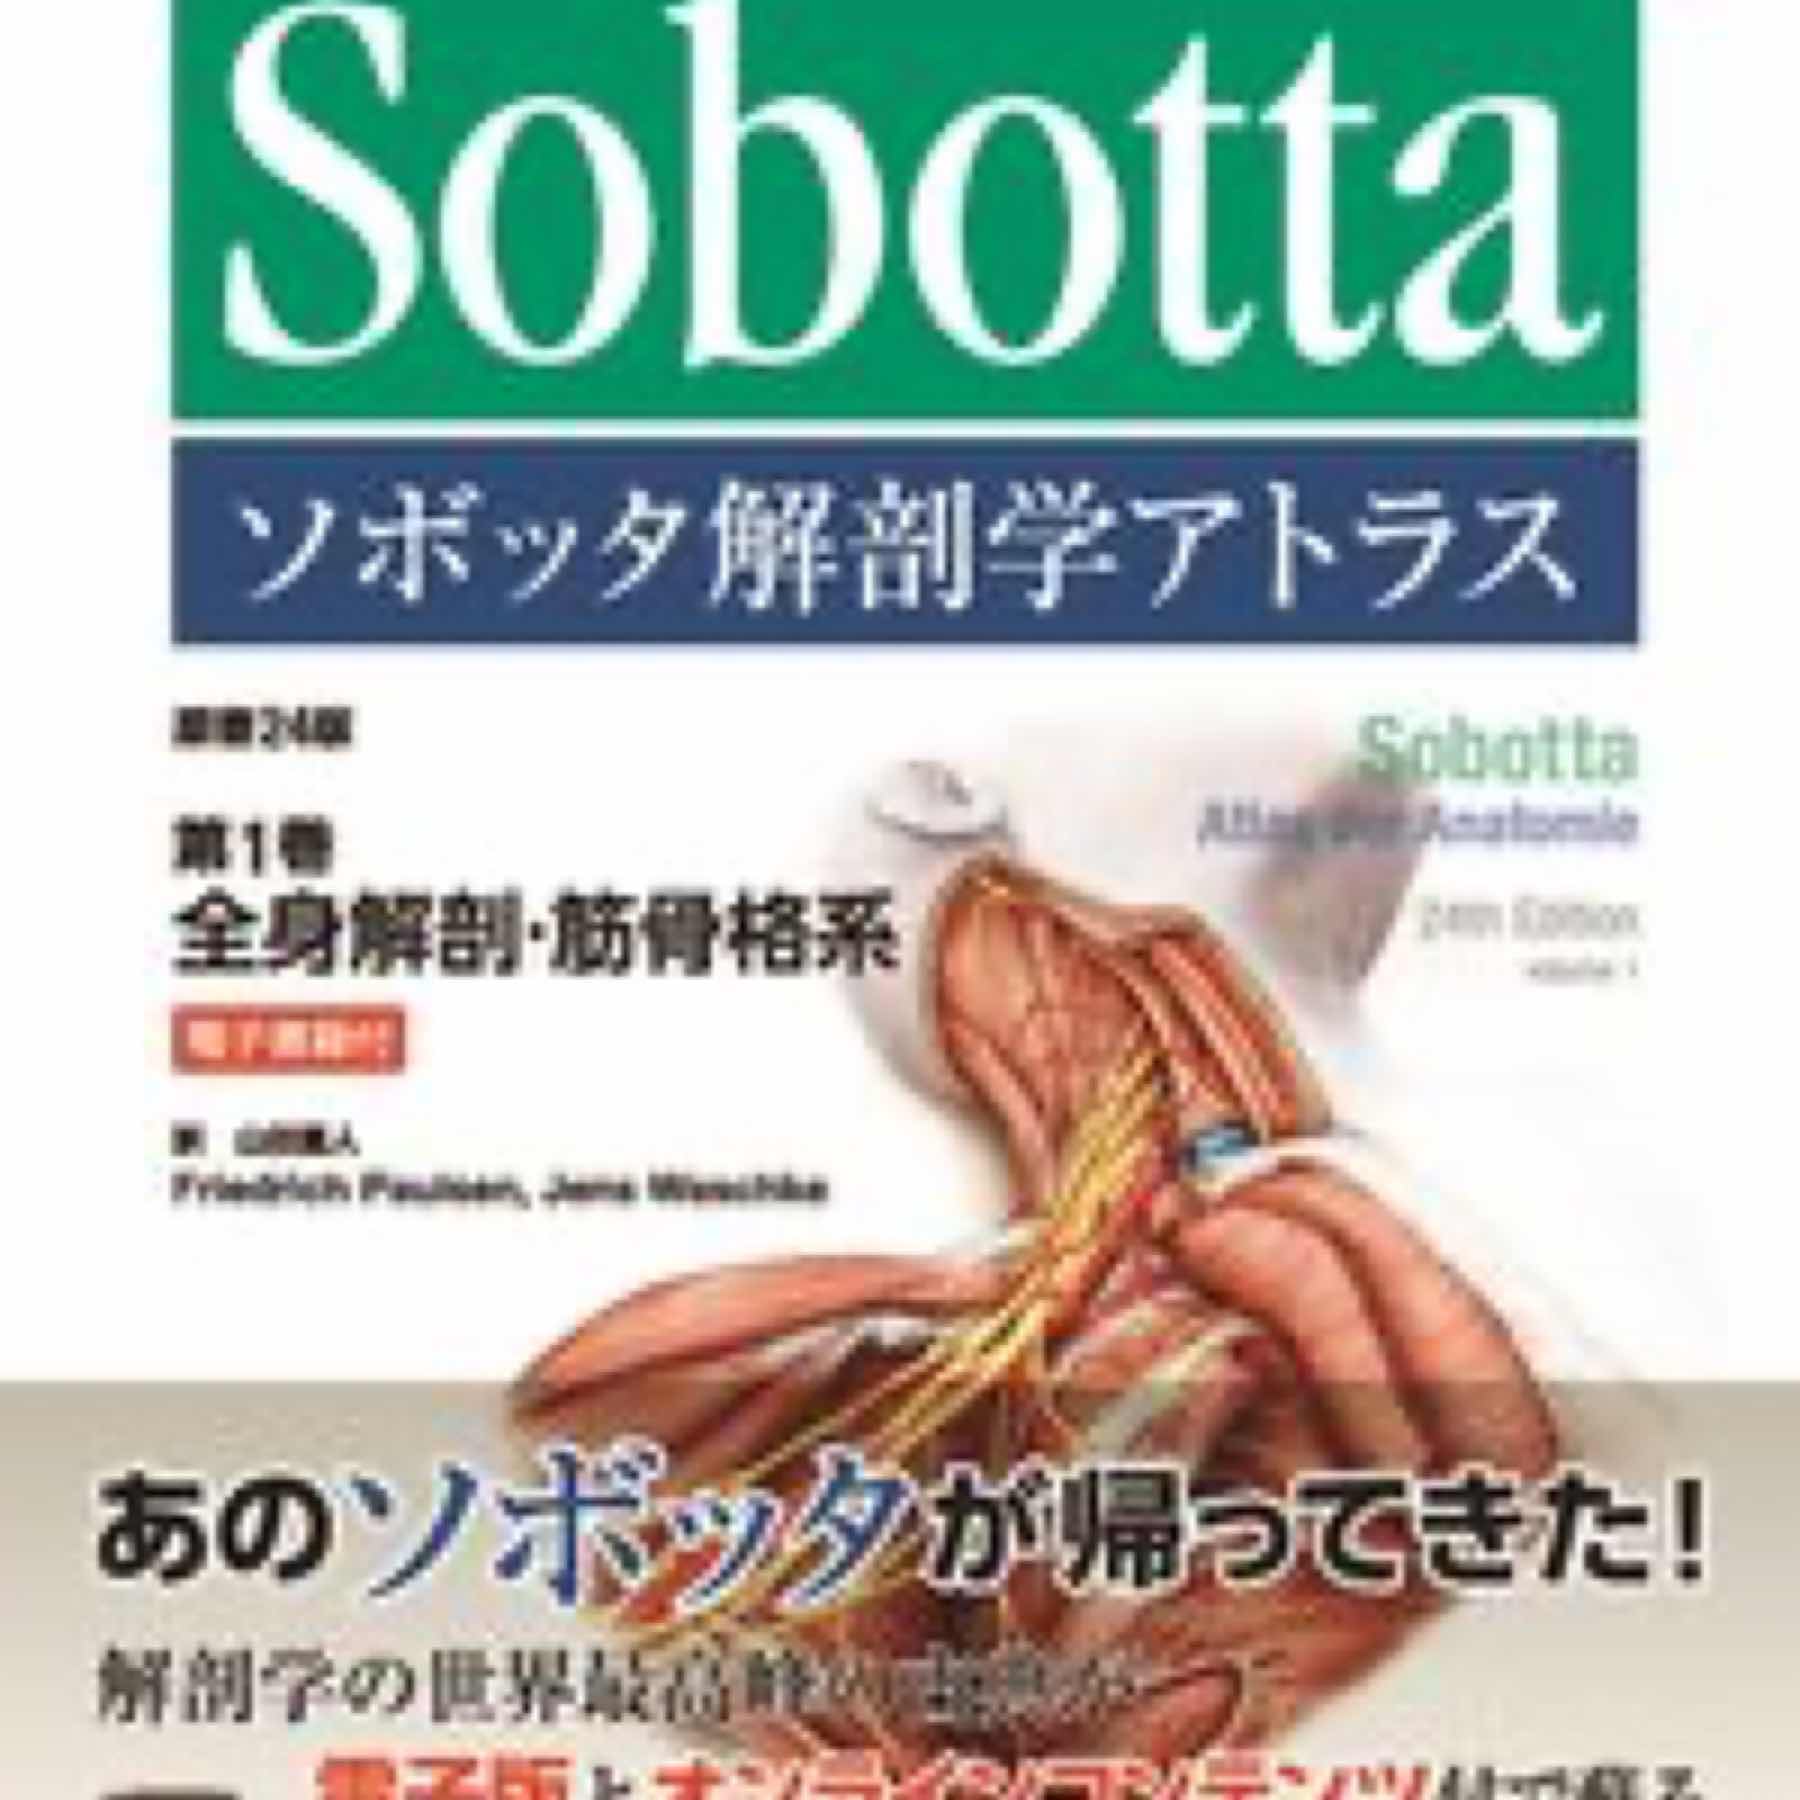 ソボッタ解剖学アトラス  原書24版 第1巻 全身解剖・筋骨格系